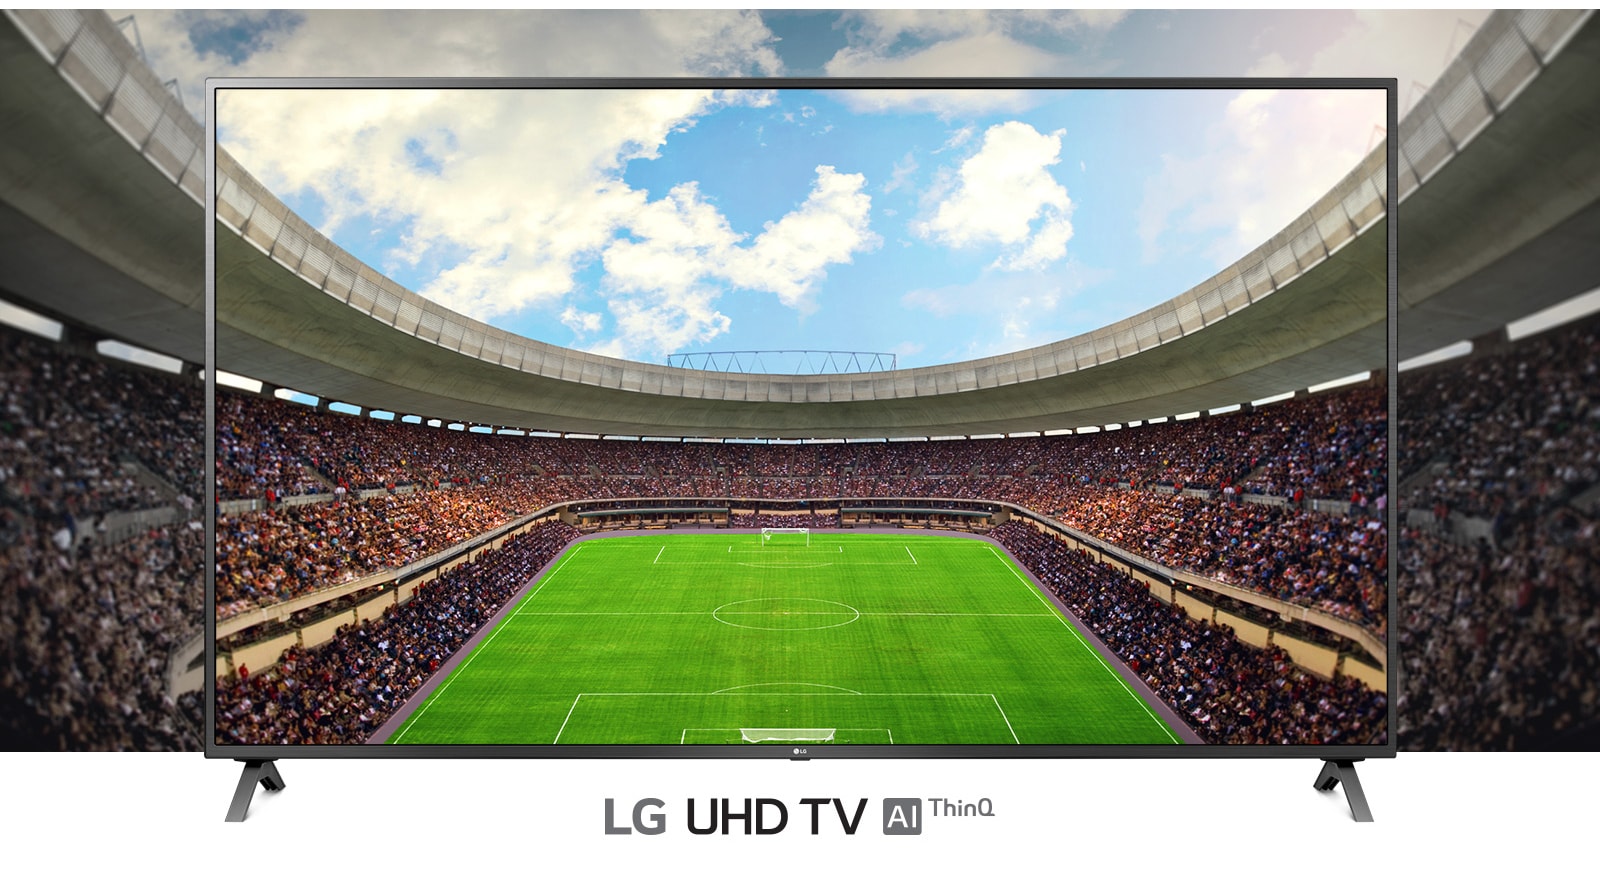 На экране телевизора показан панорамный вид футбольного стадиона, полного зрителей.